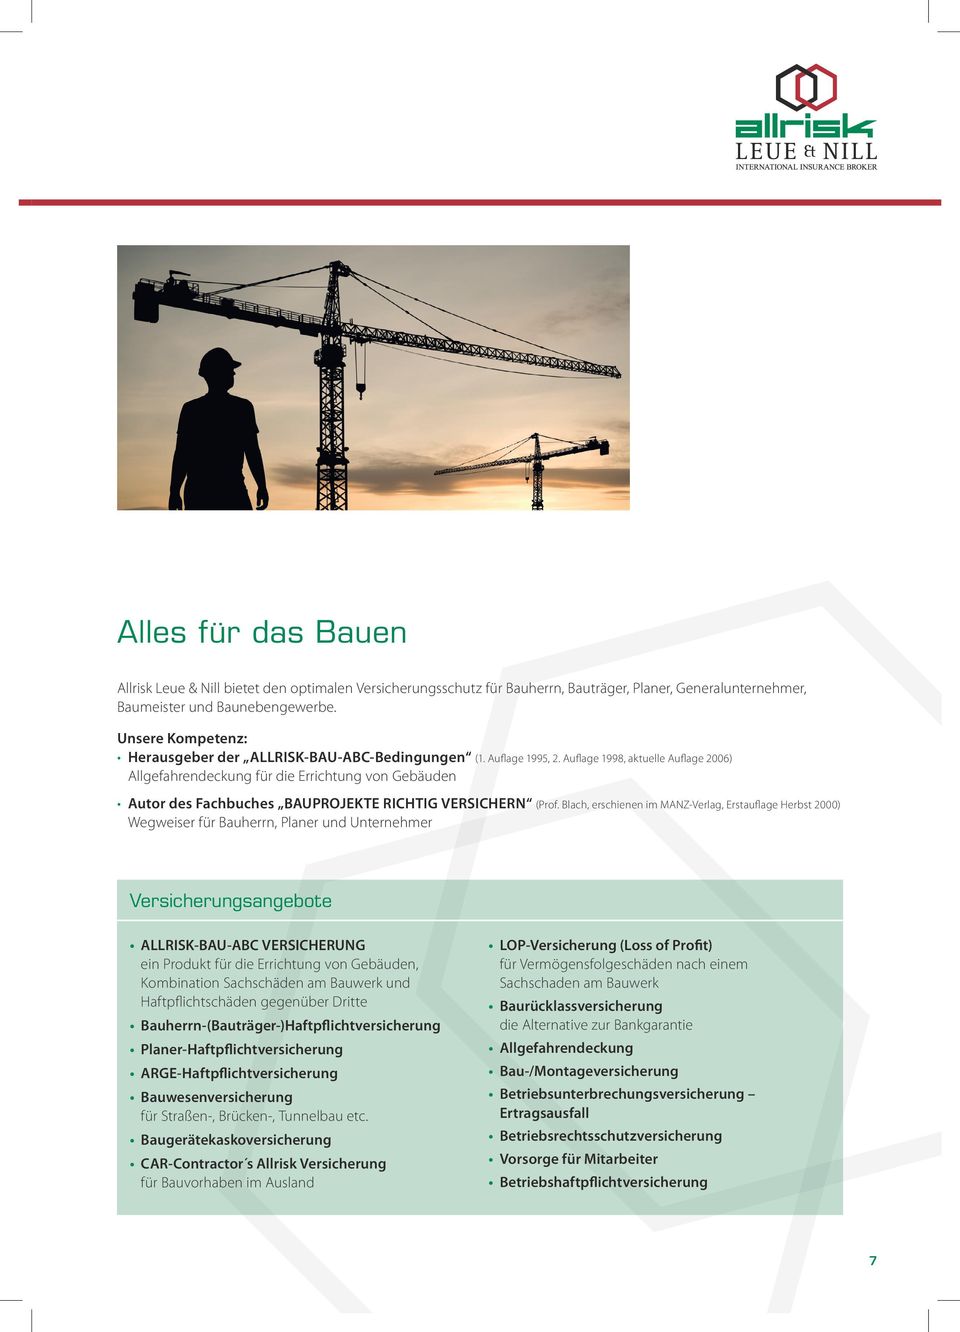 Auflage 1998, aktuelle Auflage 2006) Allgefahrendeckung für die Errichtung von Gebäuden Autor des Fachbuches BAUPROJEKTE RICHTIG VERSICHERN (Prof.